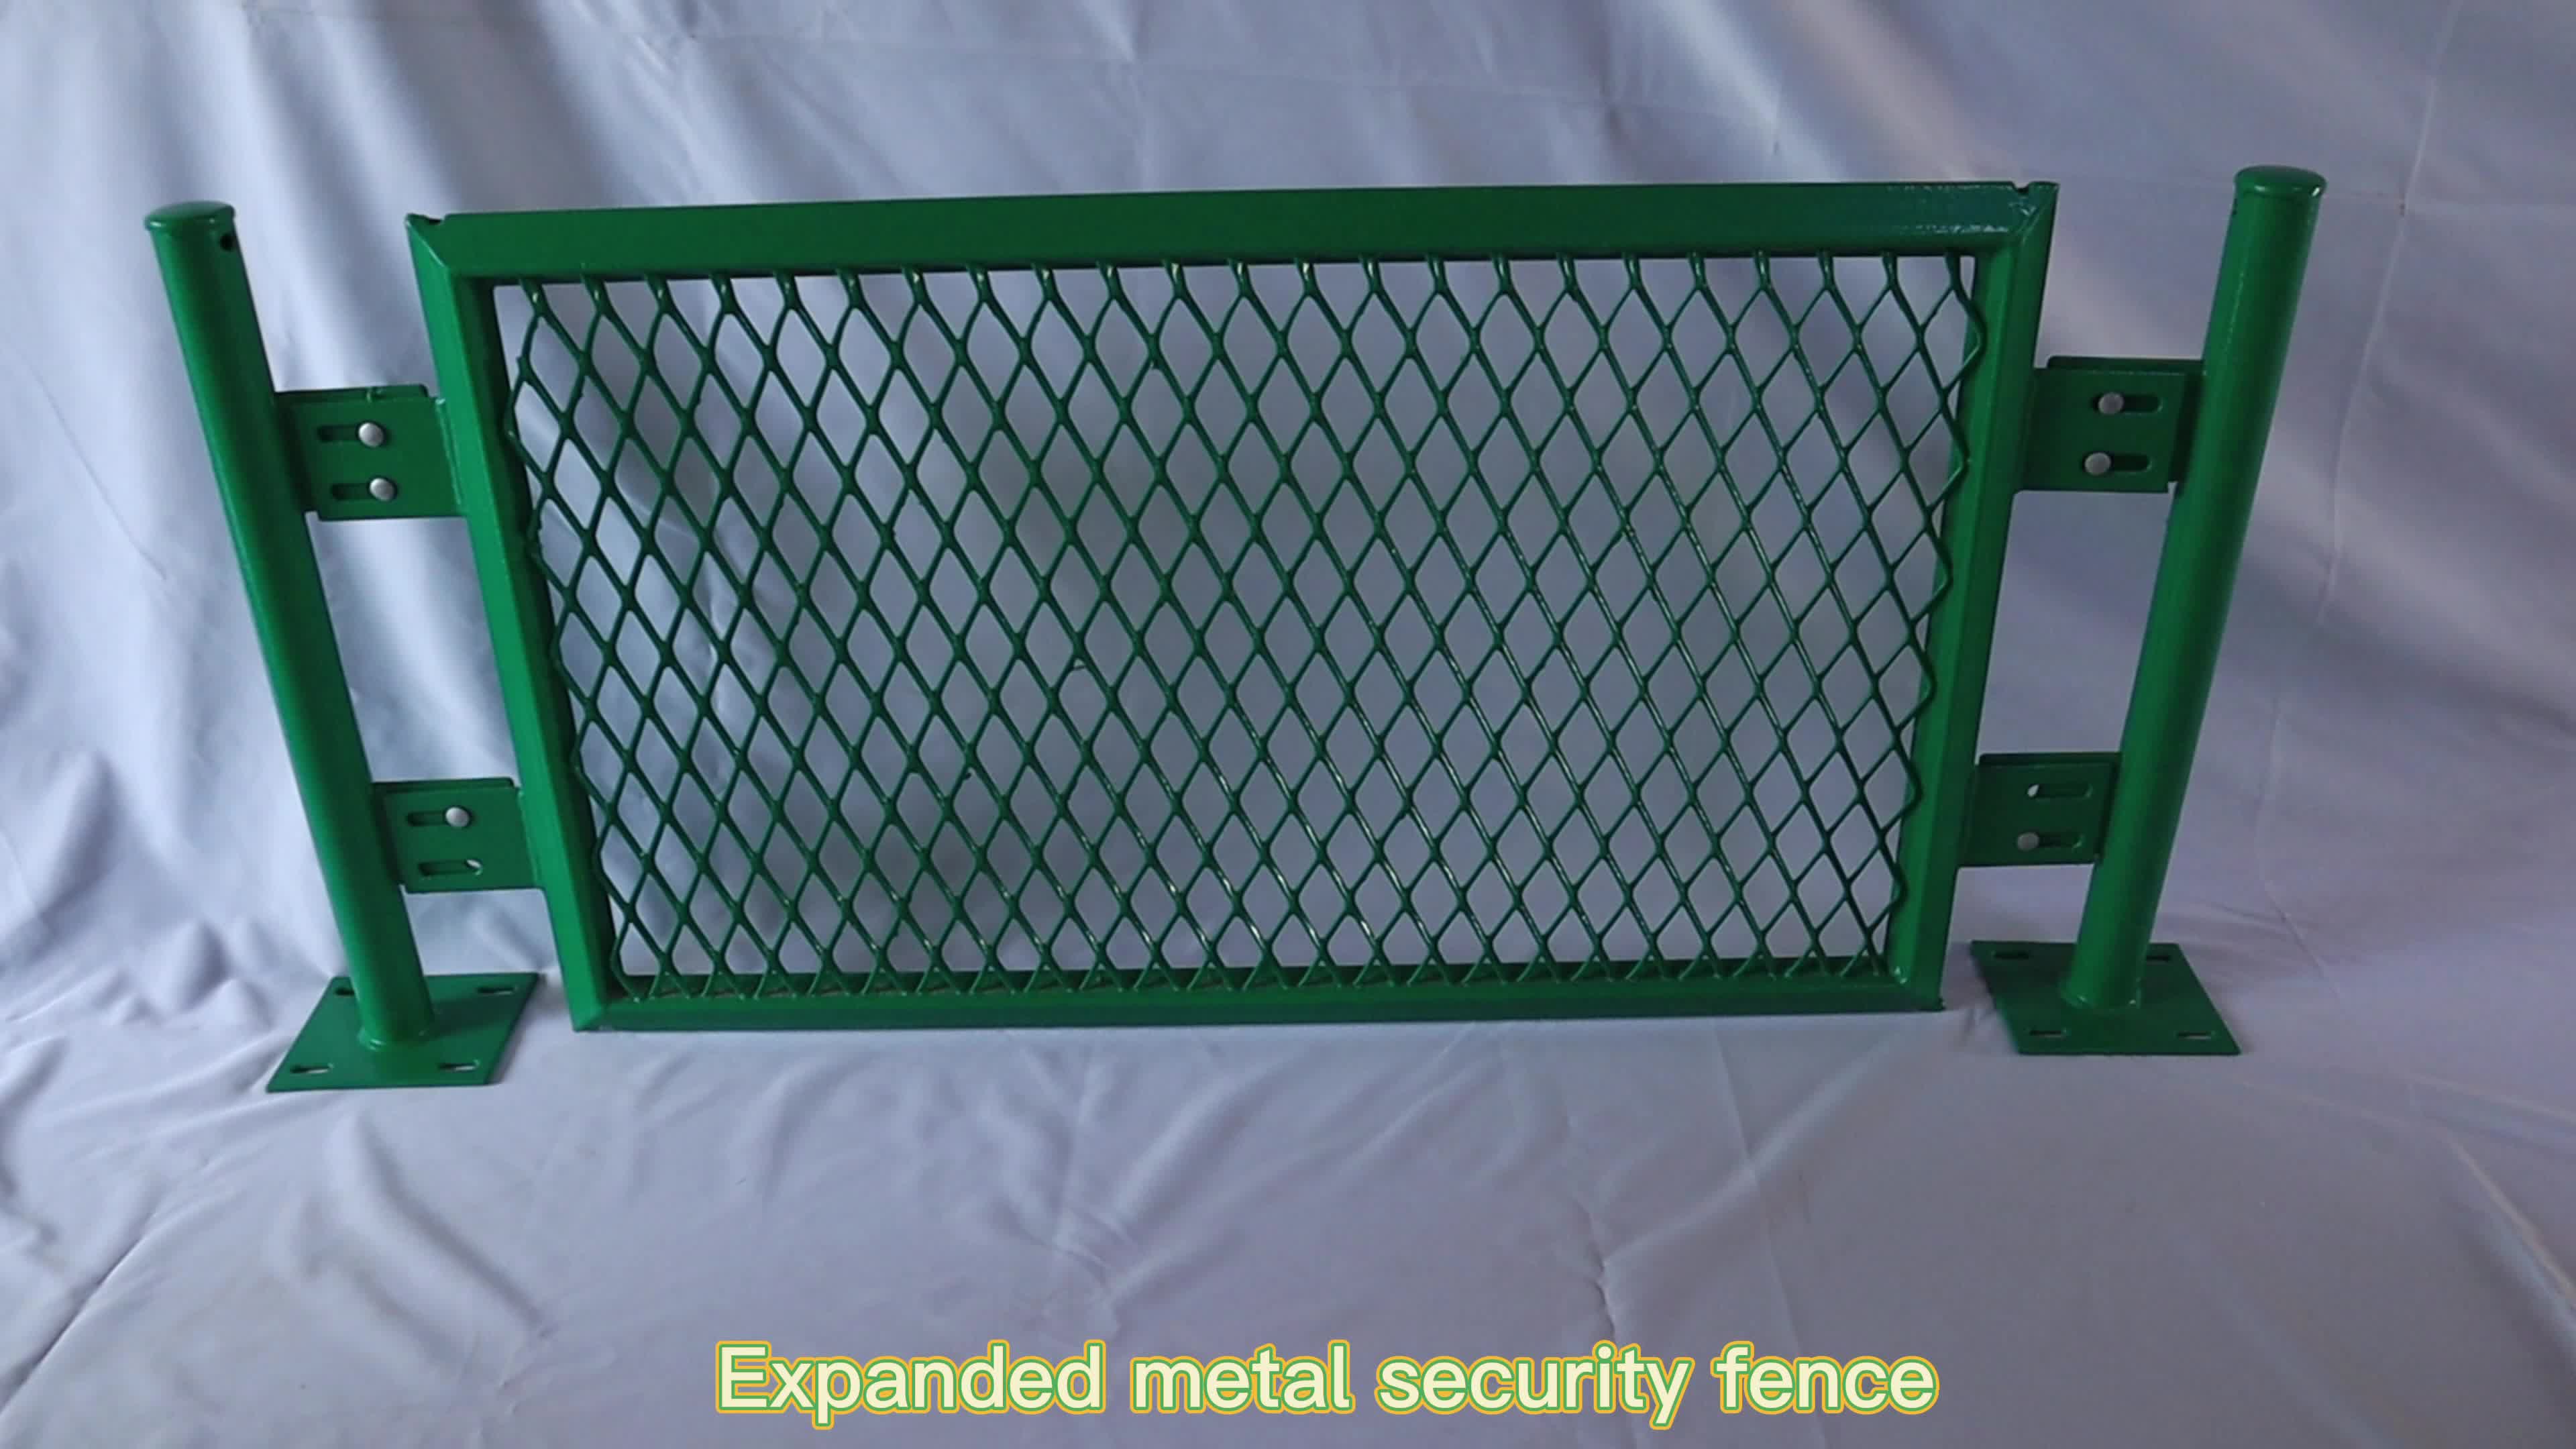 Folha de metal expandida de aço Xinhai achatada (3/4 #9) .120 &quot;x 24&quot; x 48 &quot;usada na plataforma de segurança da passarela REOL1